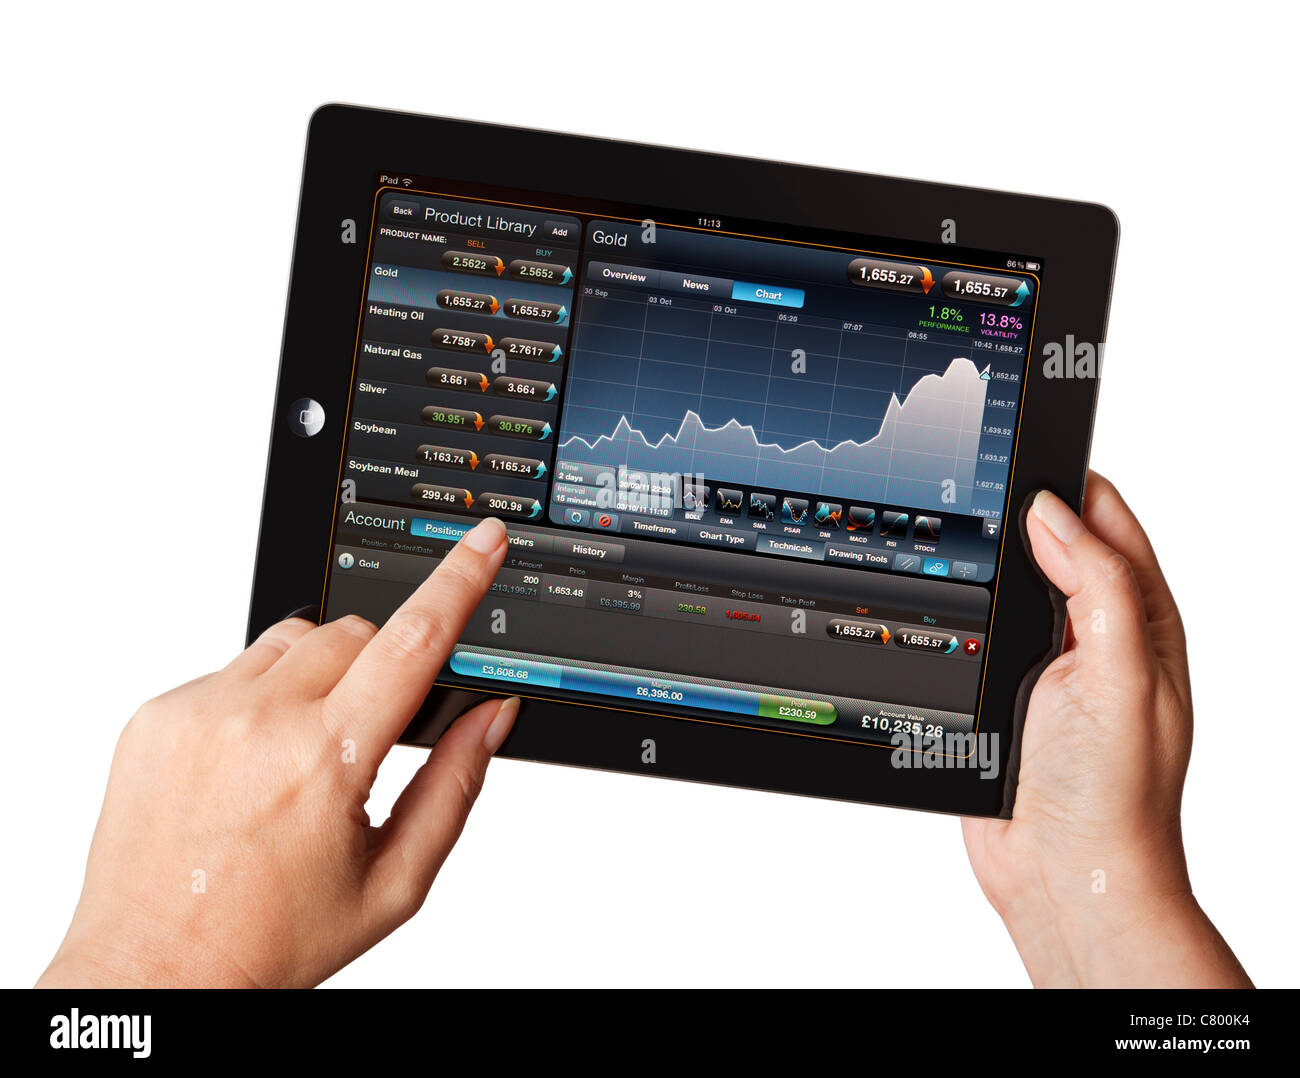 Stock Market trading - Hands holding iPad à l'aide d'une demande de bourse Banque D'Images